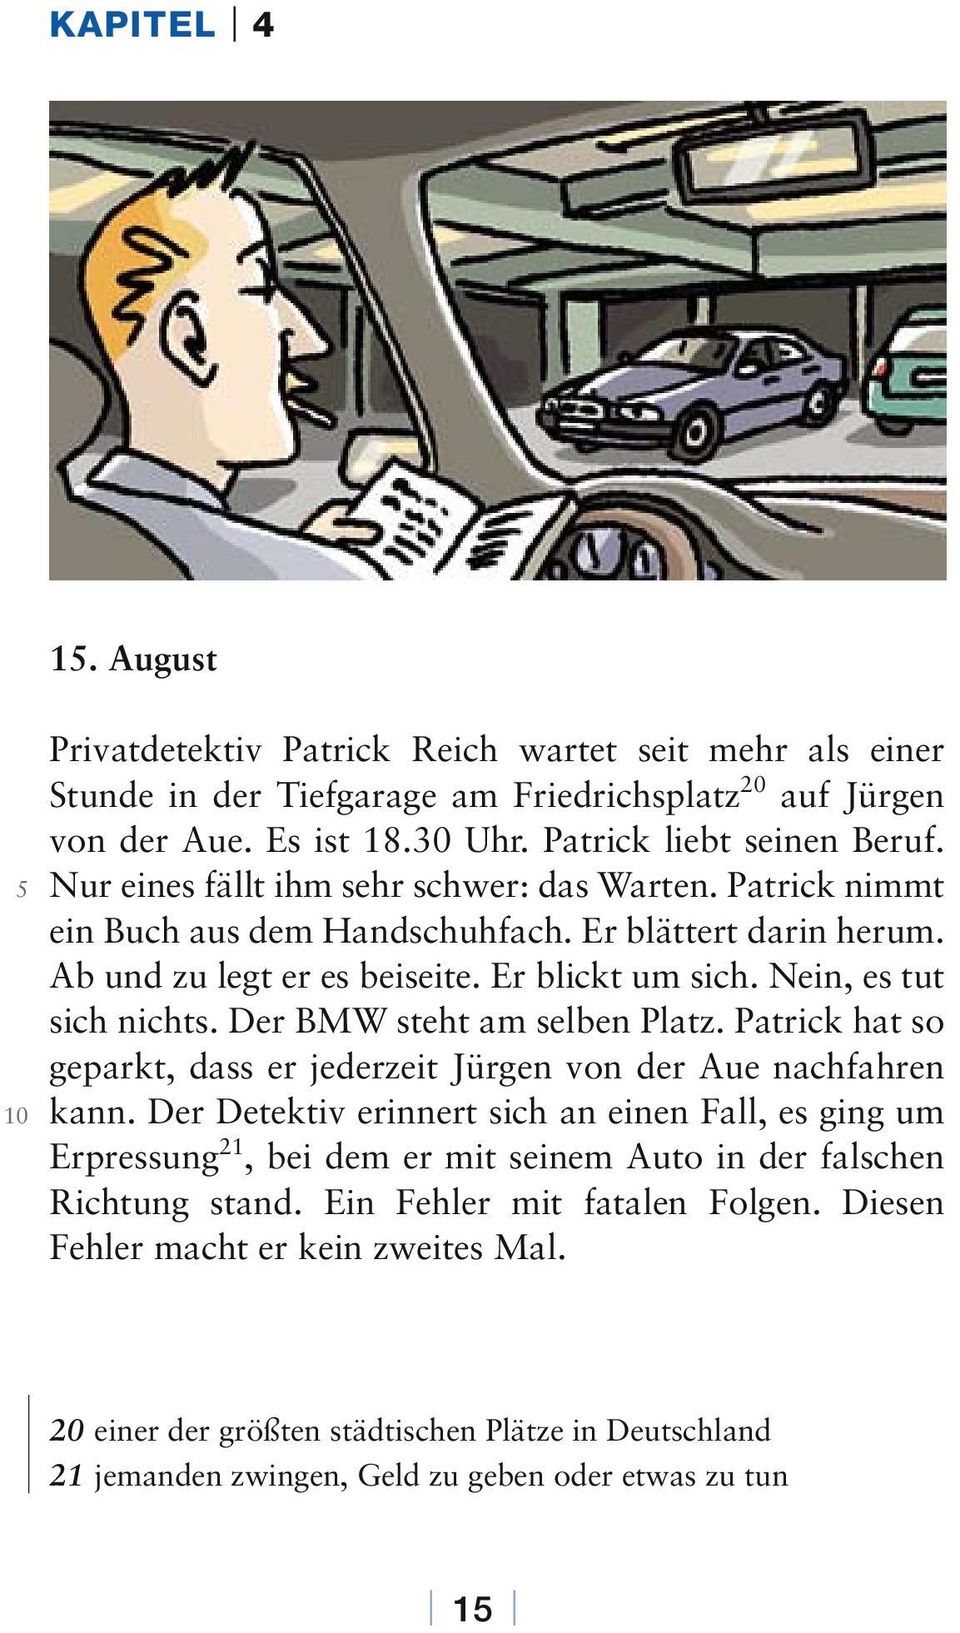 Der BMW steht am selben Platz. Patrick hat so geparkt, dass er jederzeit Jürgen von der Aue nachfahren kann.